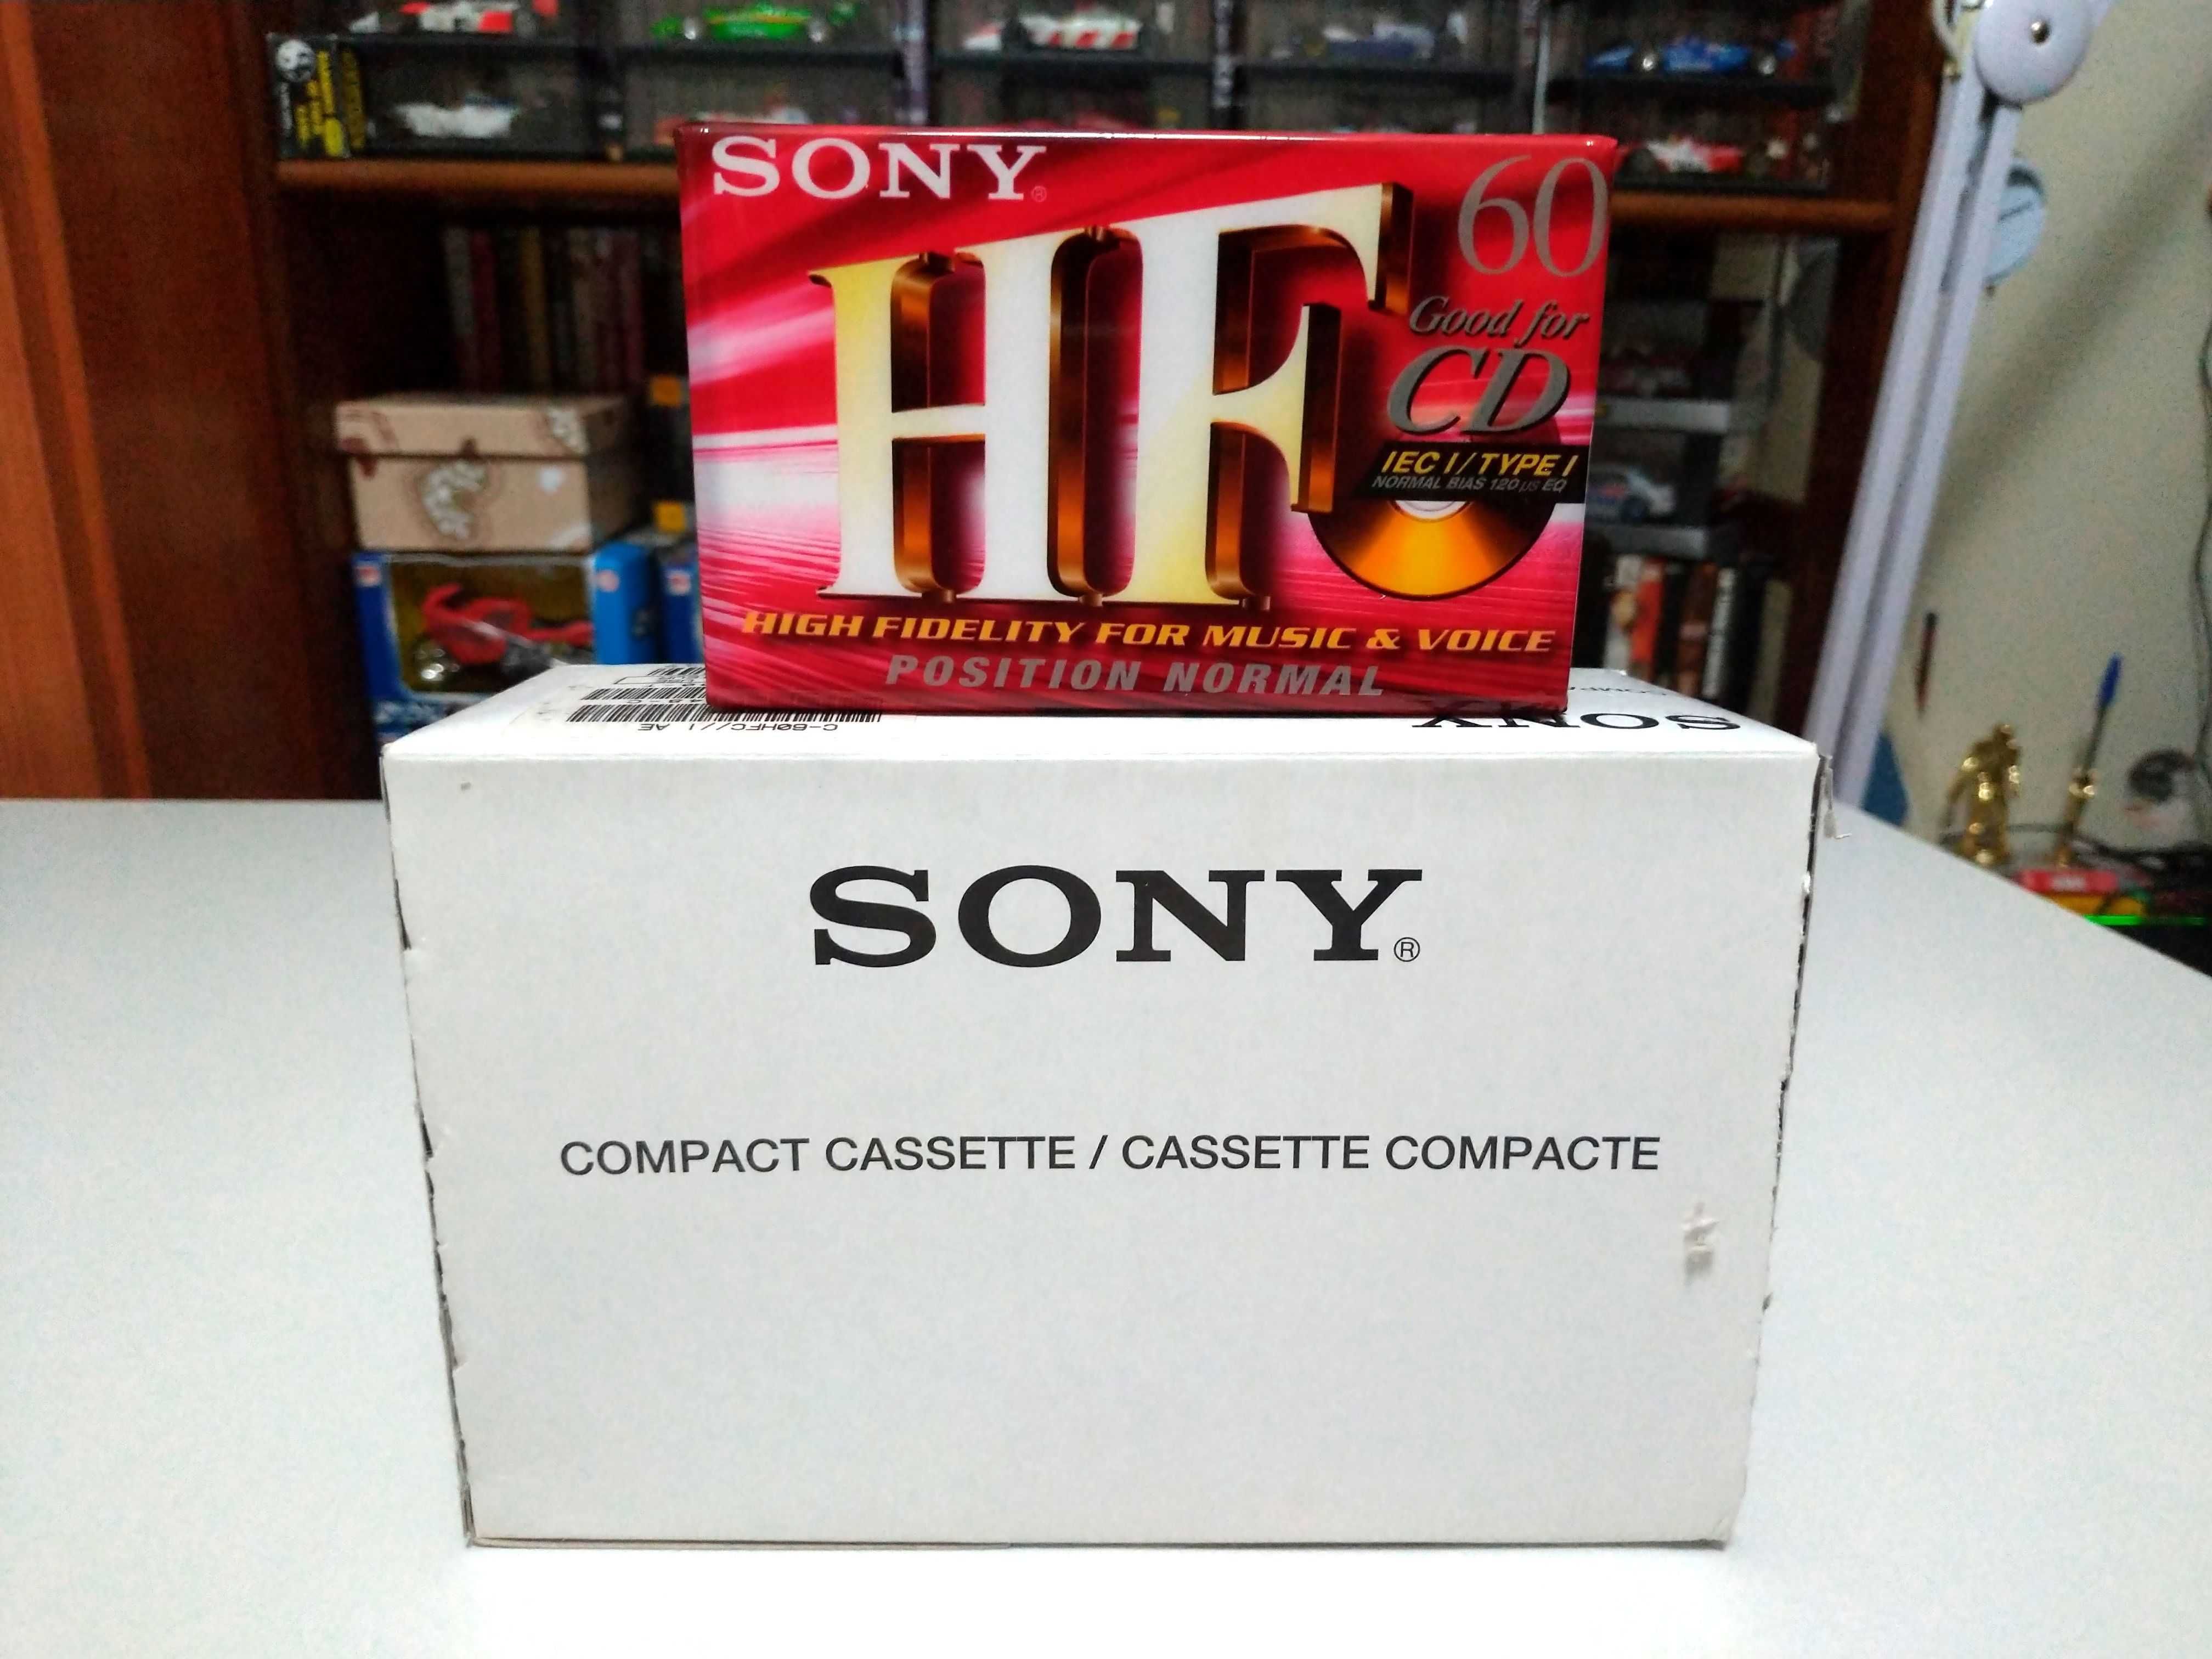 Caixa de 10x Cassetes Sony HF60 Novas e Seladas.